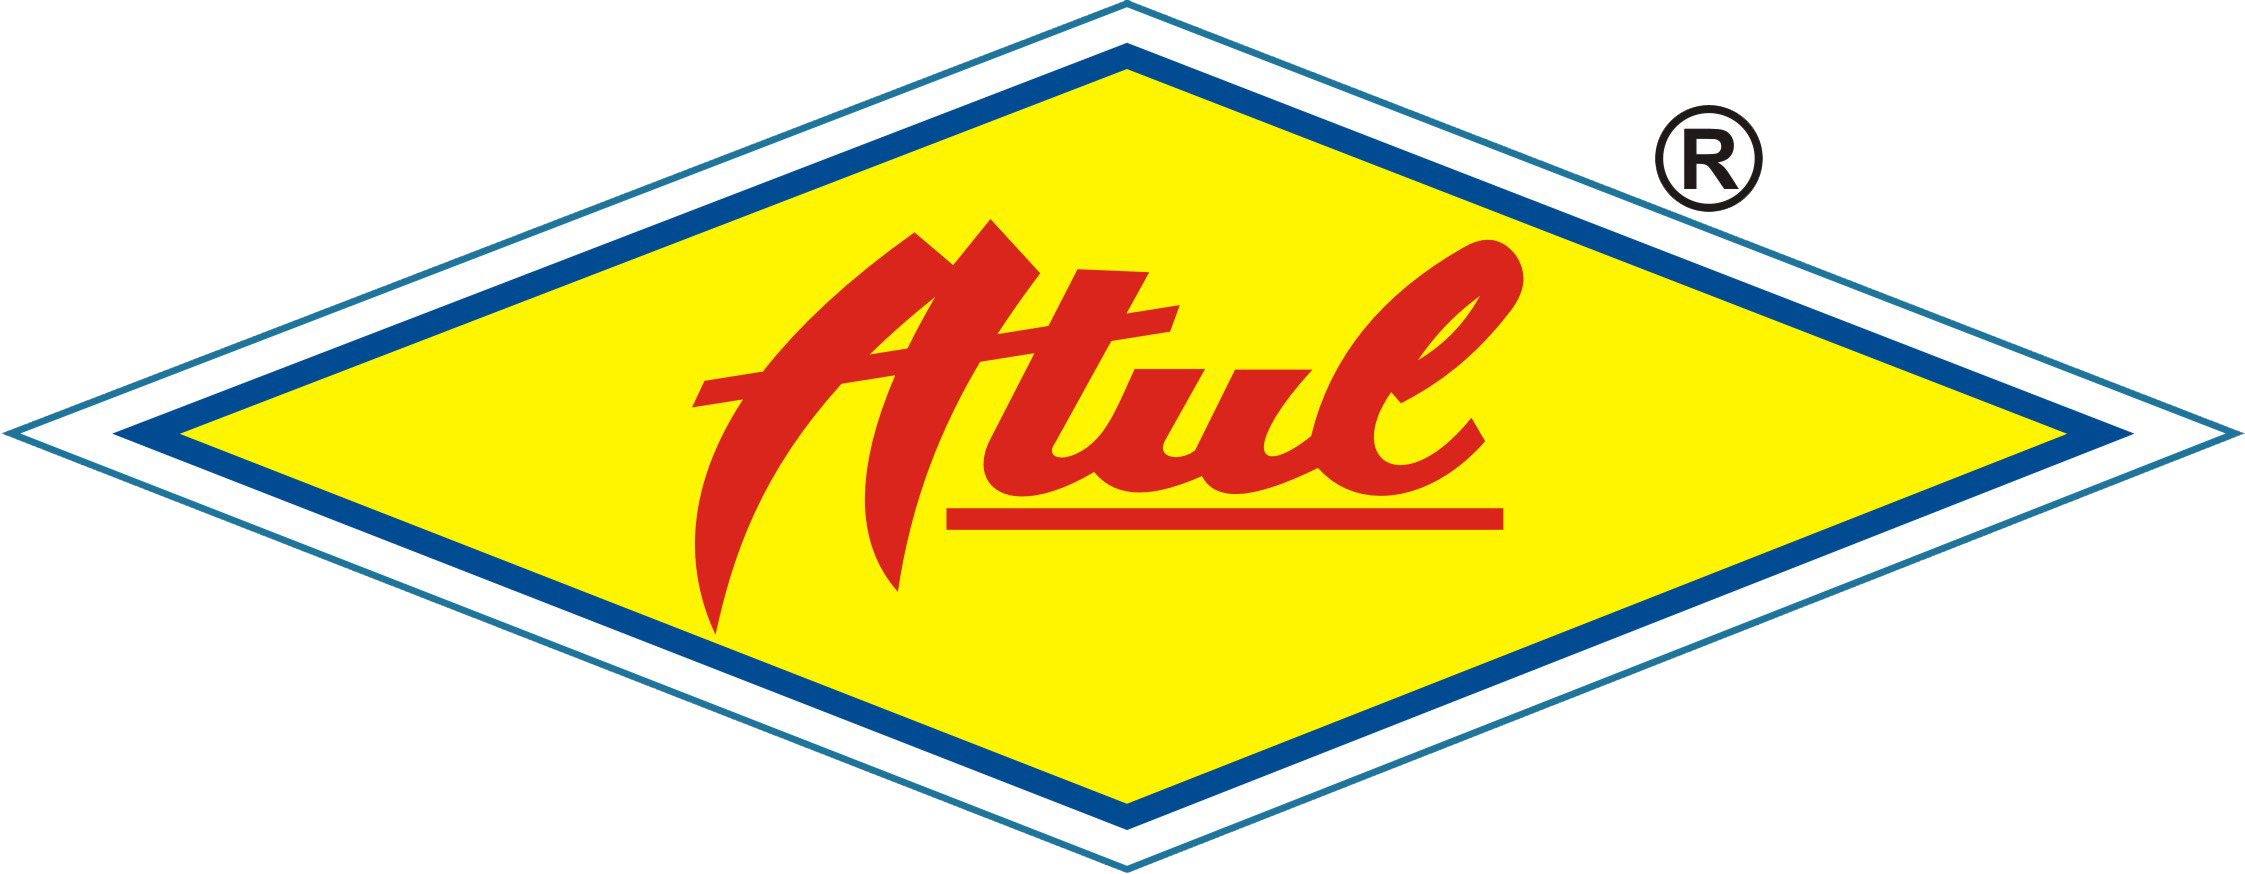 Atul Auto Limited - Atul | Facebook